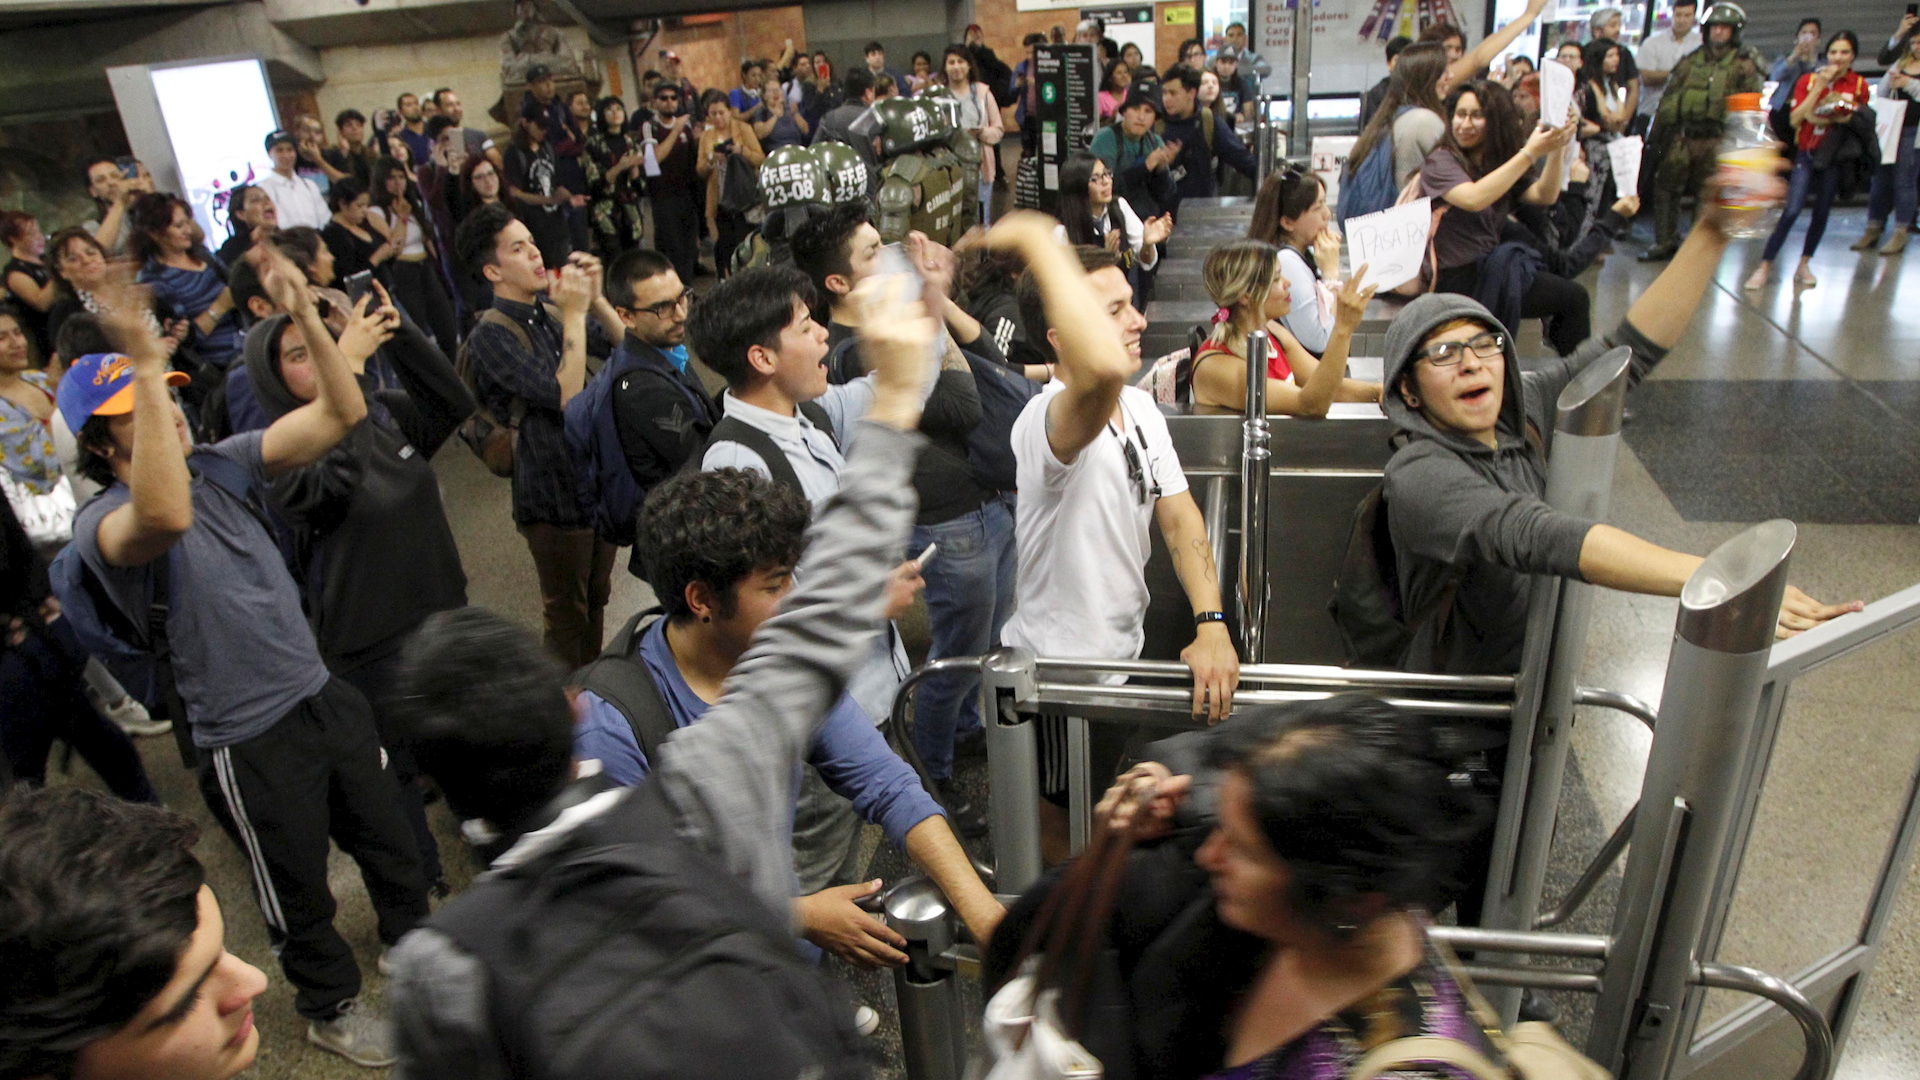 Una imagen de la primera protesta estudiantil de octubre de 2019, en el metro de Chile. Fue el inicio de la revuelta masiva. (Reuters)